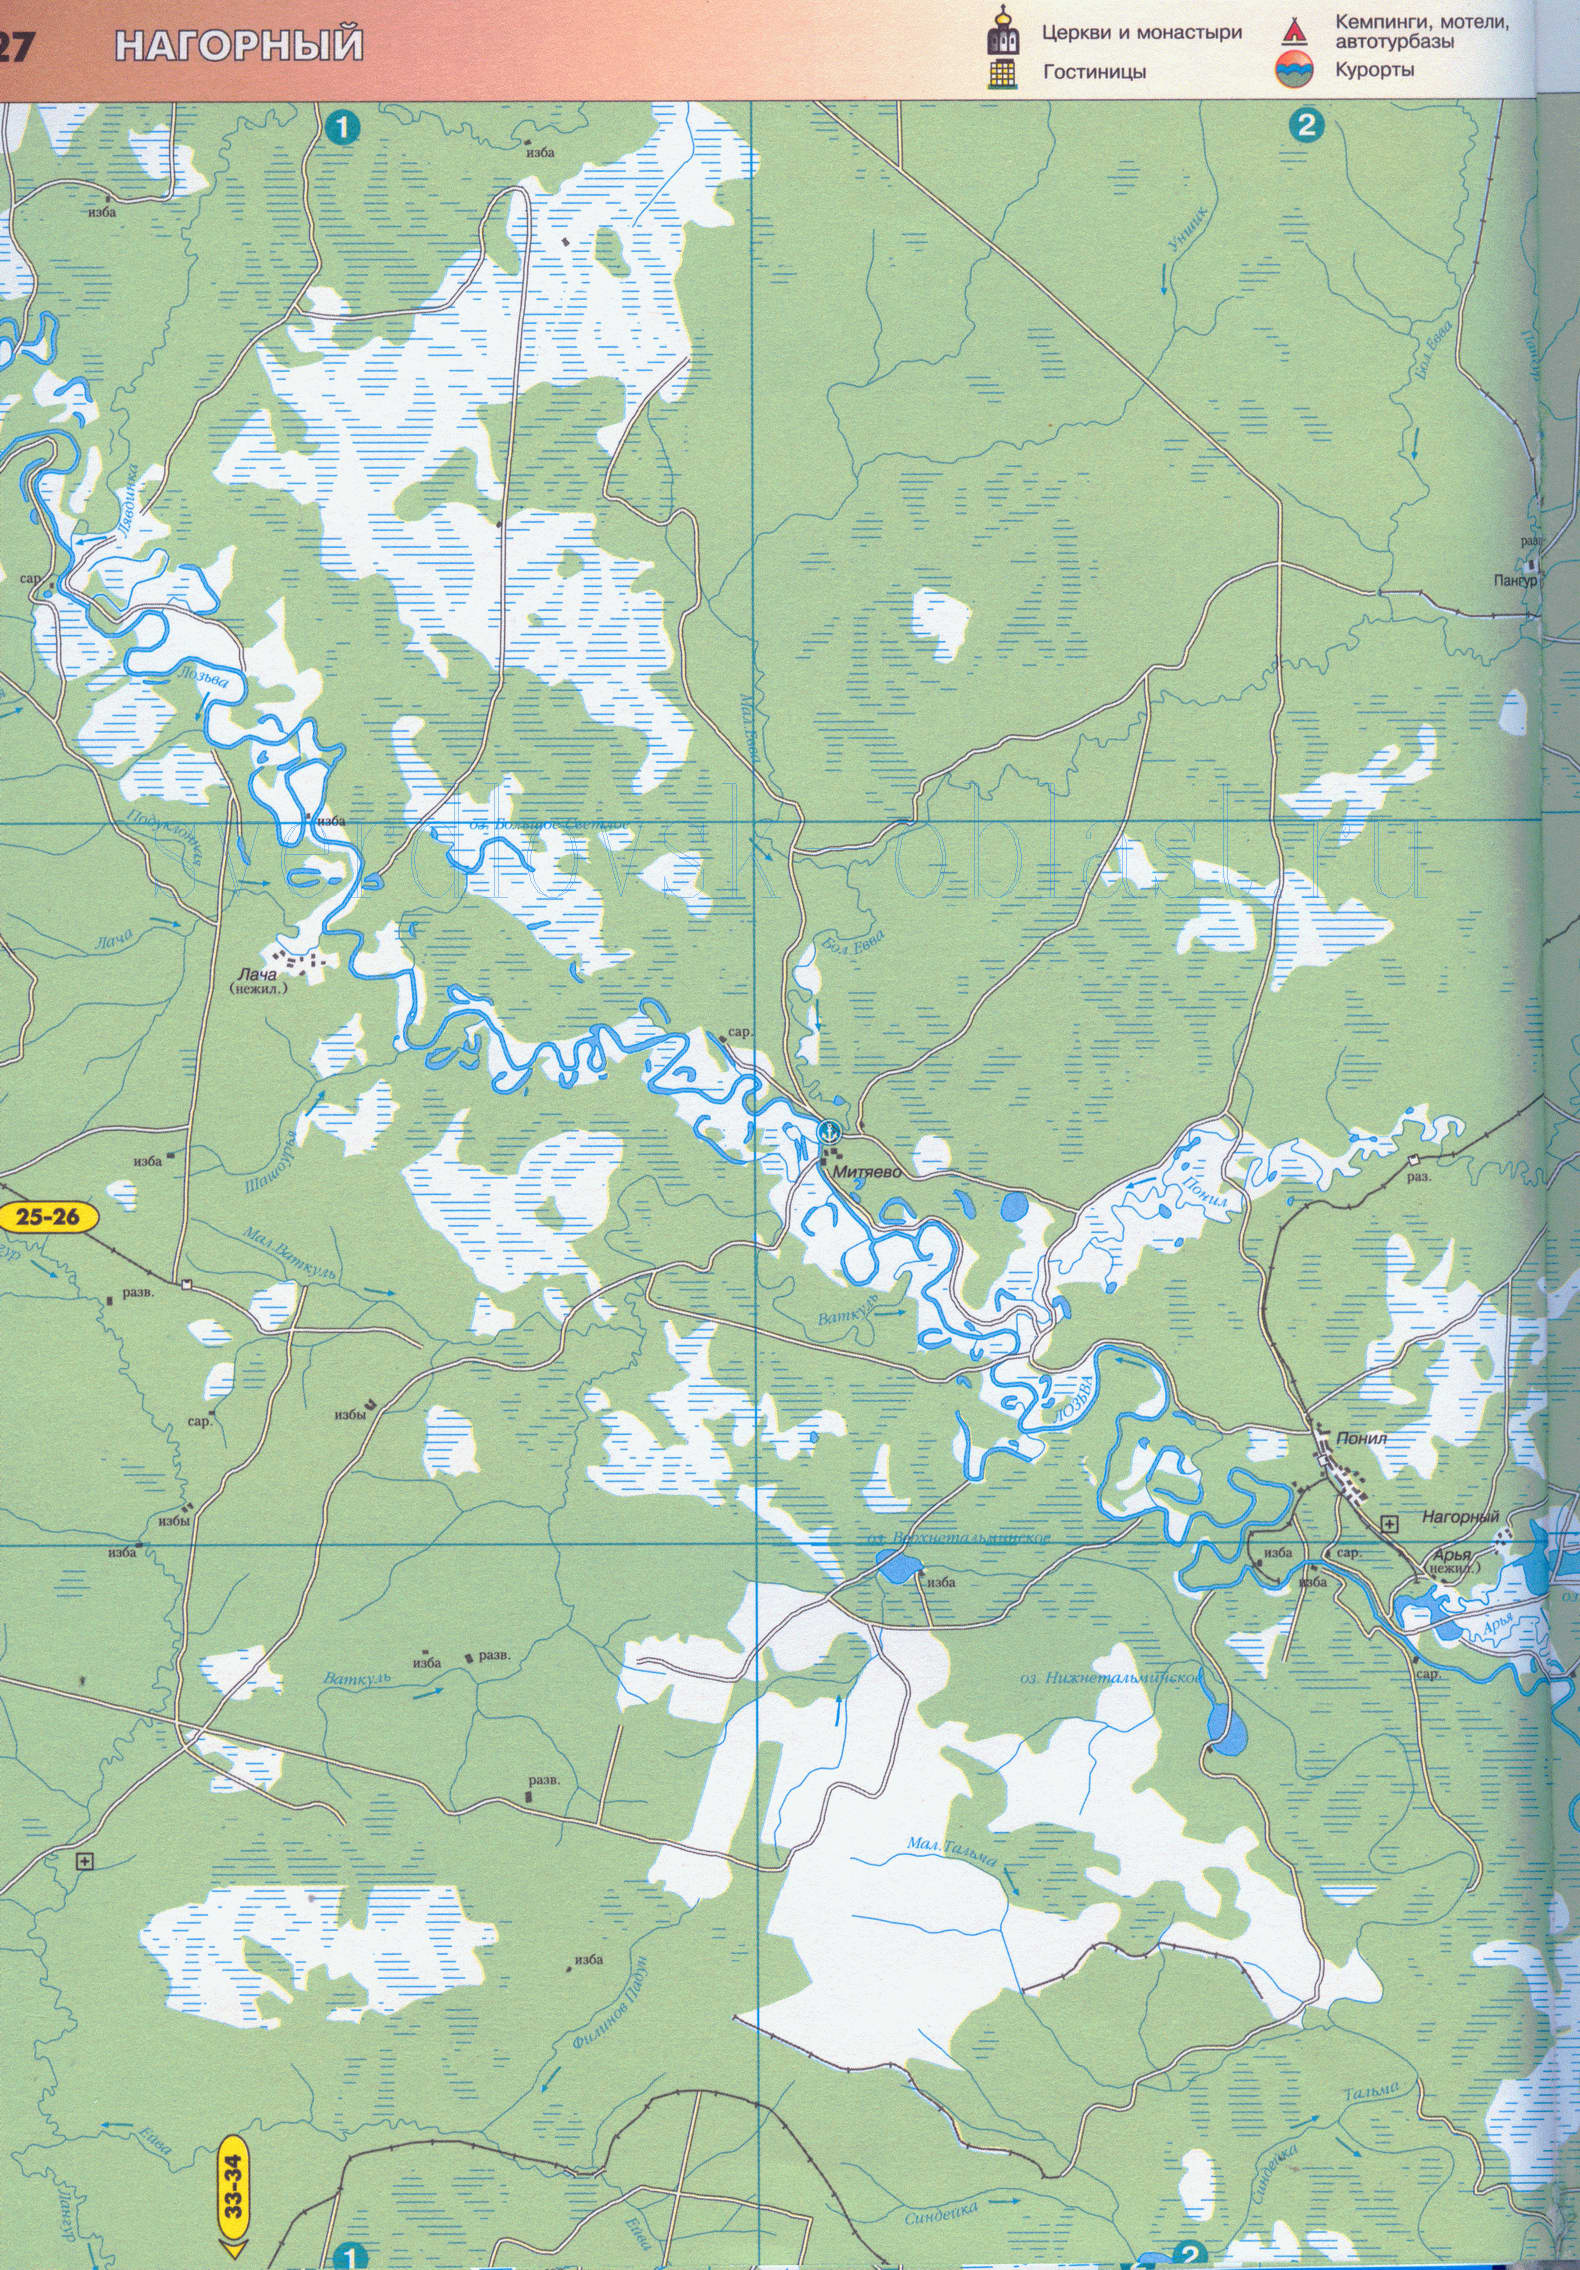 Карта окрестностей города Североуральск Свердловской области (г Североуральск 33 тысячи жителей), C0 - 